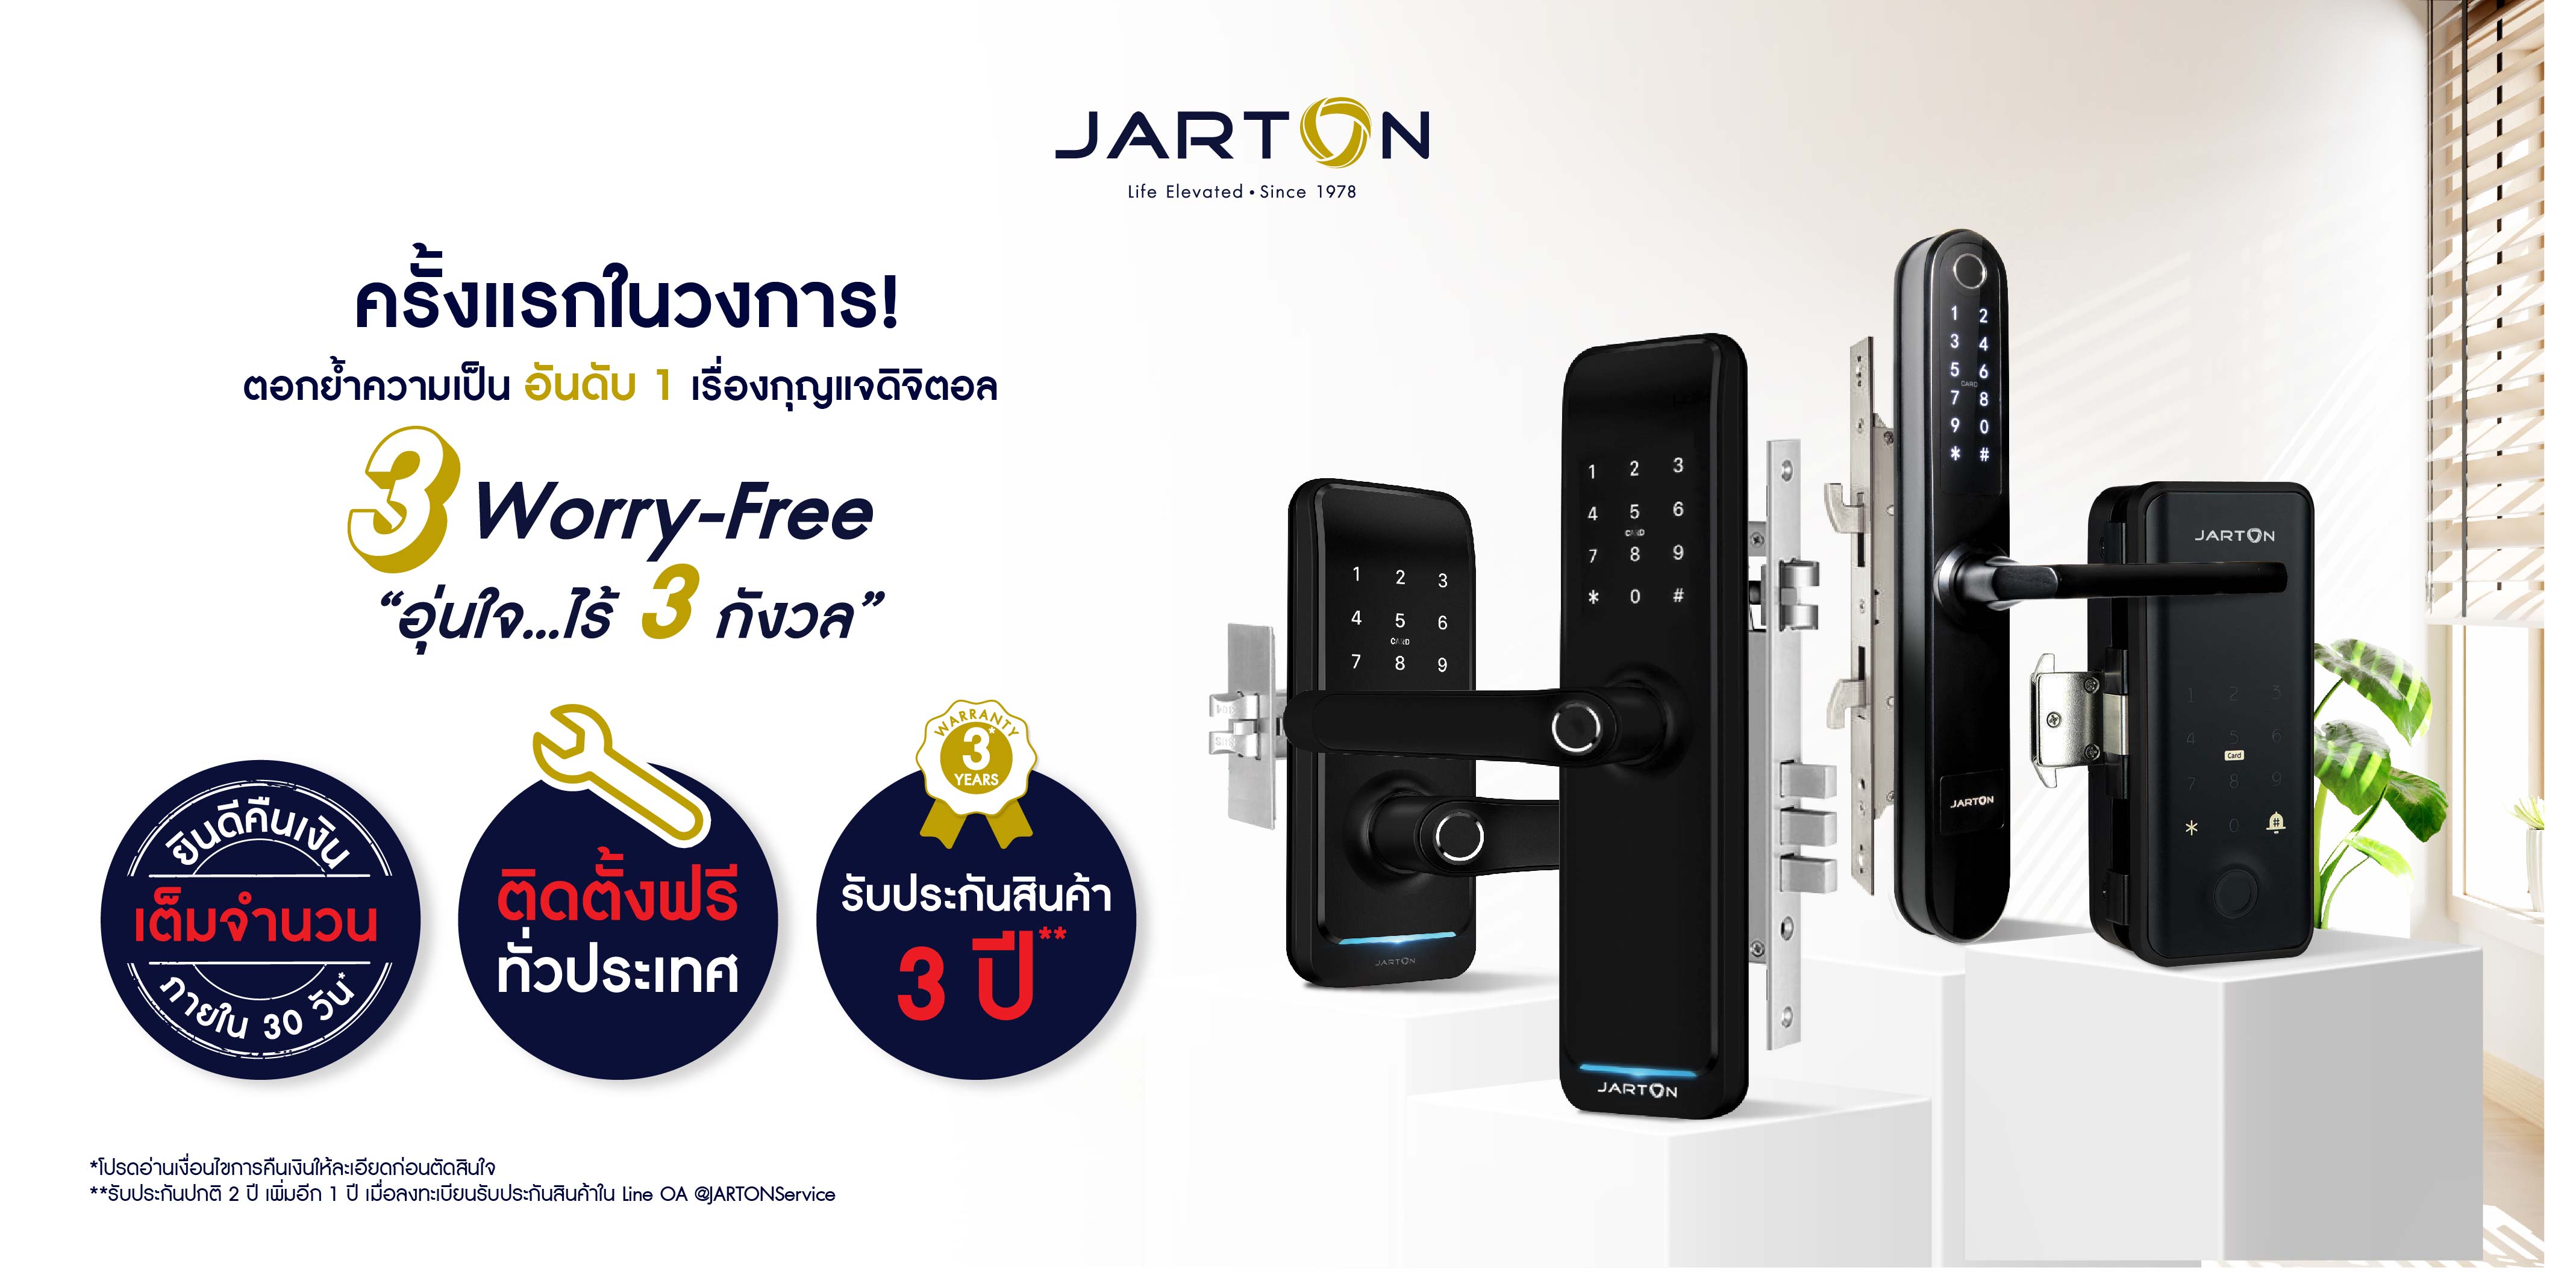 กุญแจดิจิตอล JARTON 4 รุ่น ร่วมแคมเปญ อุ่นใจ ไร้ 3 กังวลคืนเงินเต็มจำนวนภายใน 30 วัน พร้อมติดตั้งฟรีทั่วประเทศ ครั้งแรกในไทย